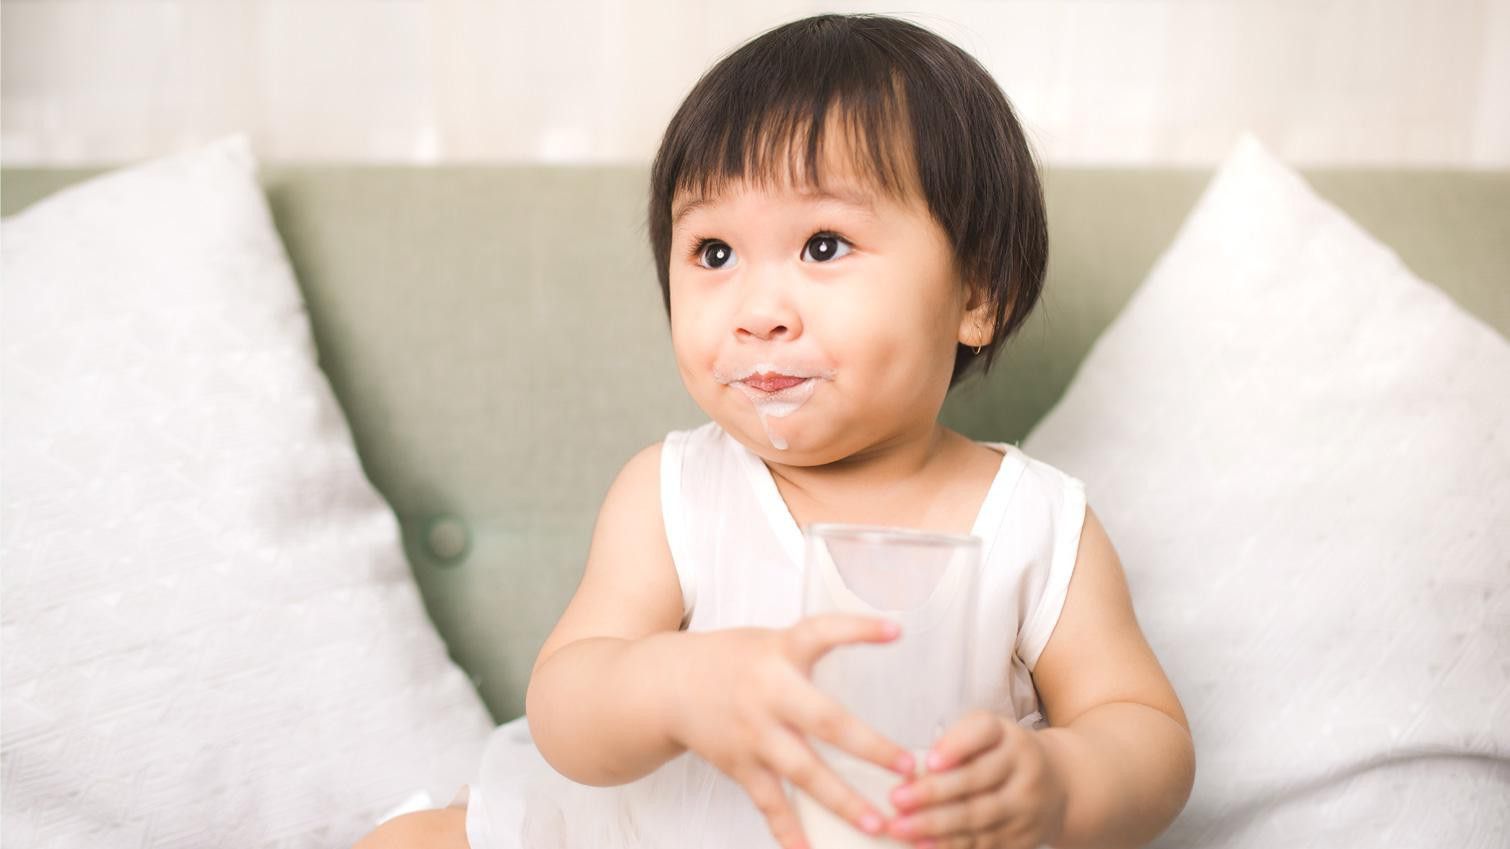 Susu Kental Manis Bukan untuk Diminum Anak-anak!